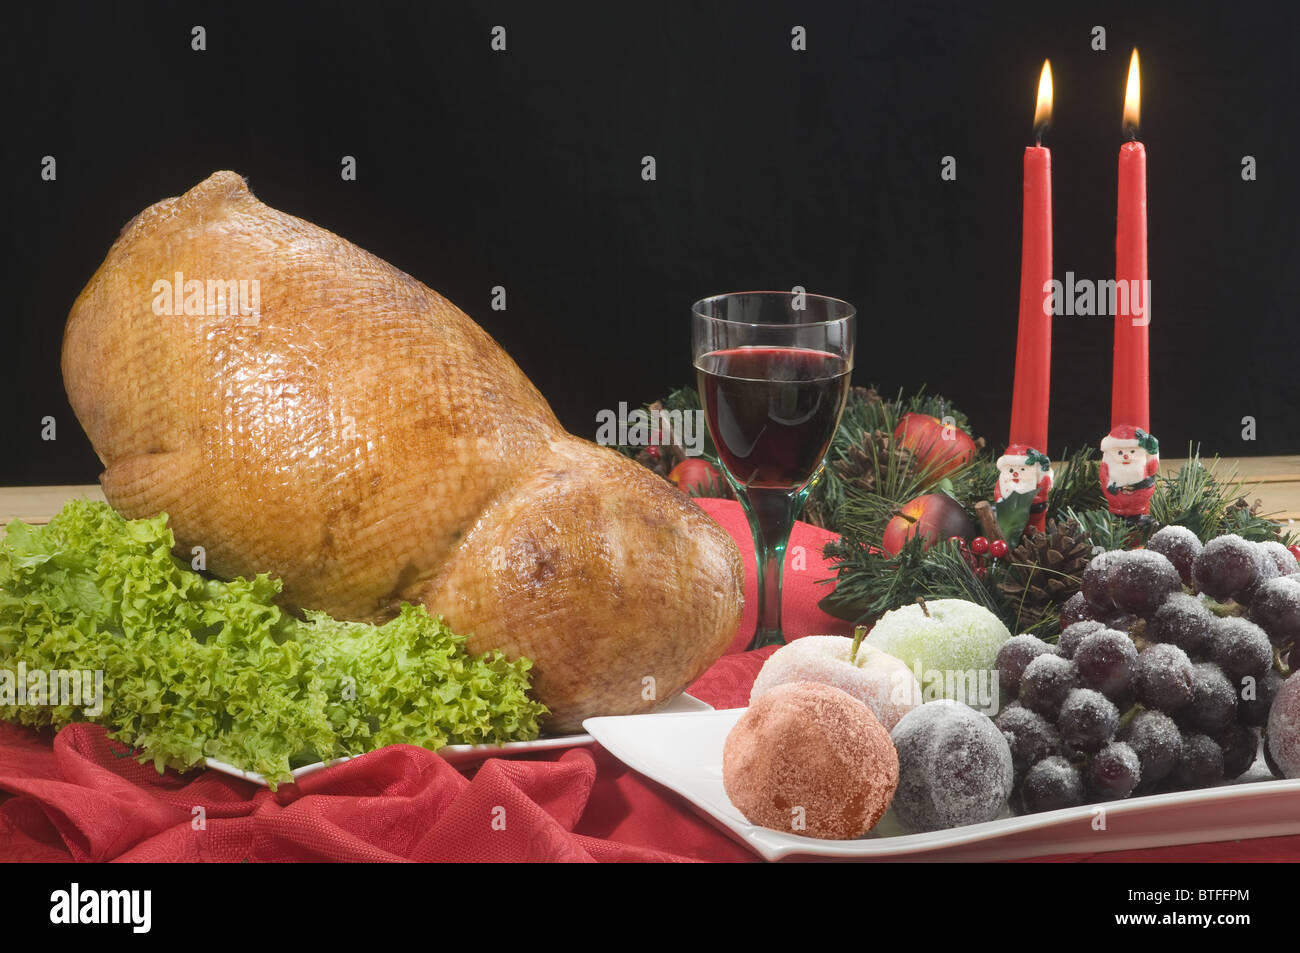 Cena navideña y año nuevo Stock Photo - Alamy